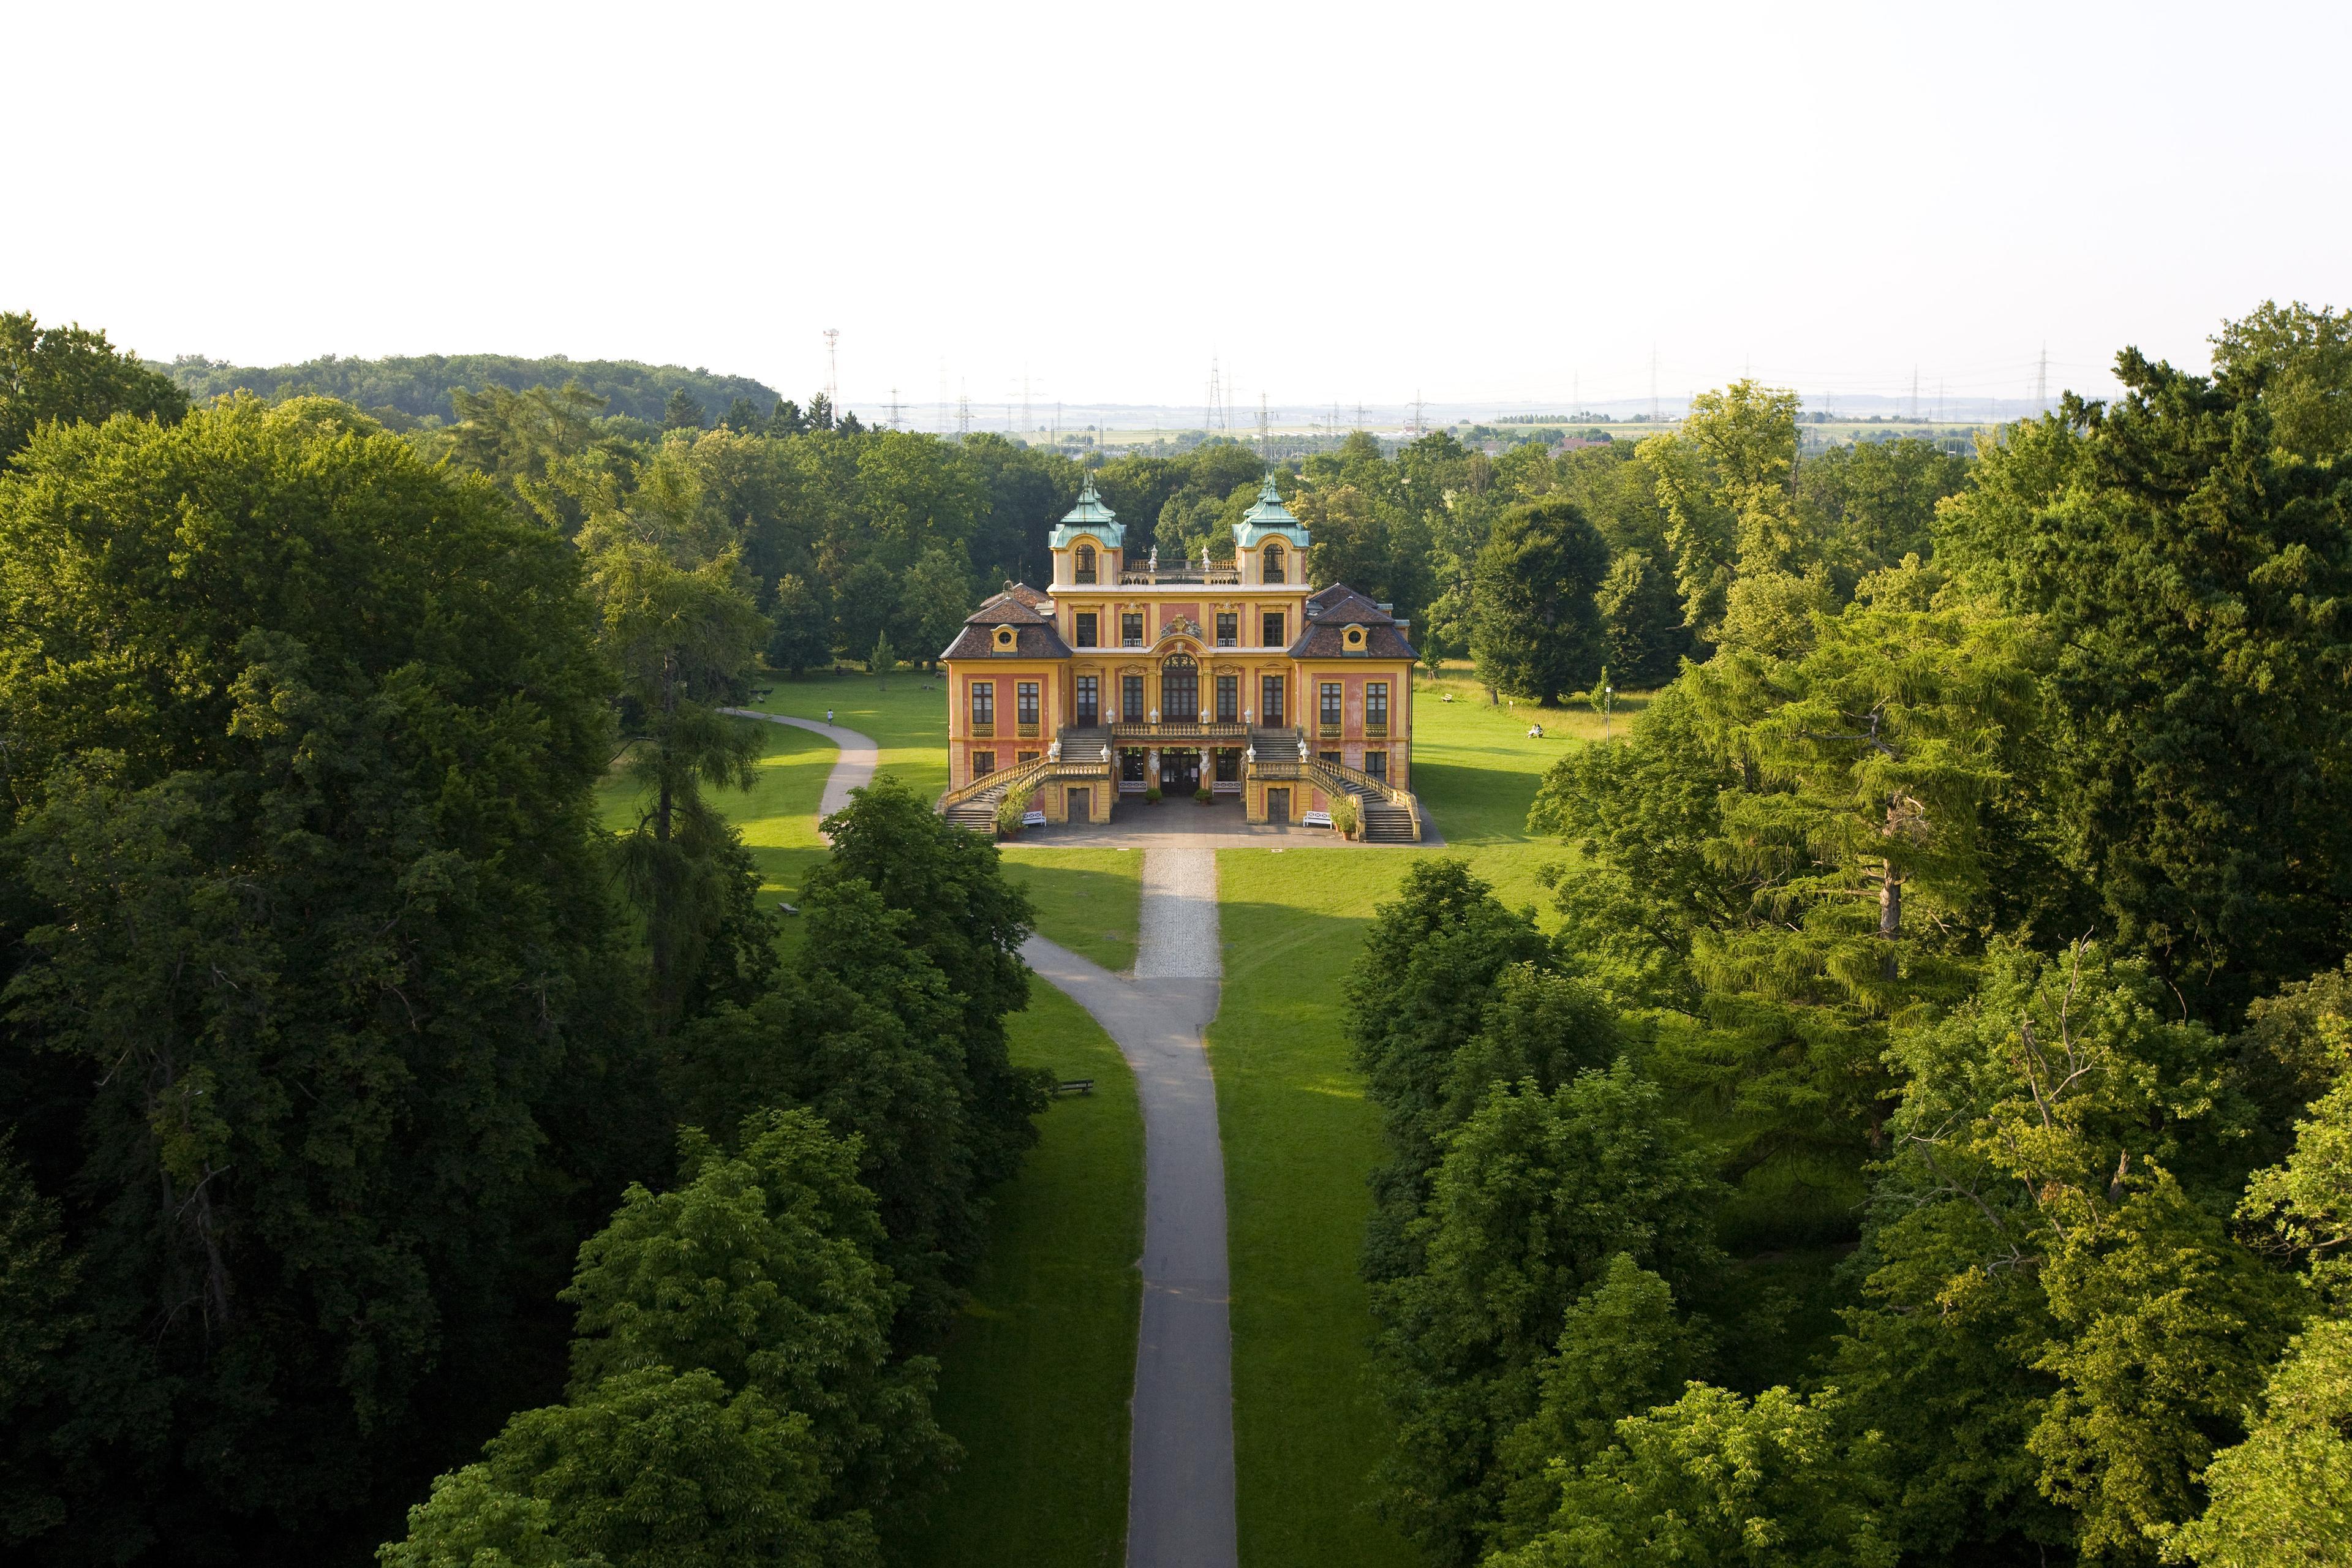 Luftbild von Schloss Favorite Ludwigsburg